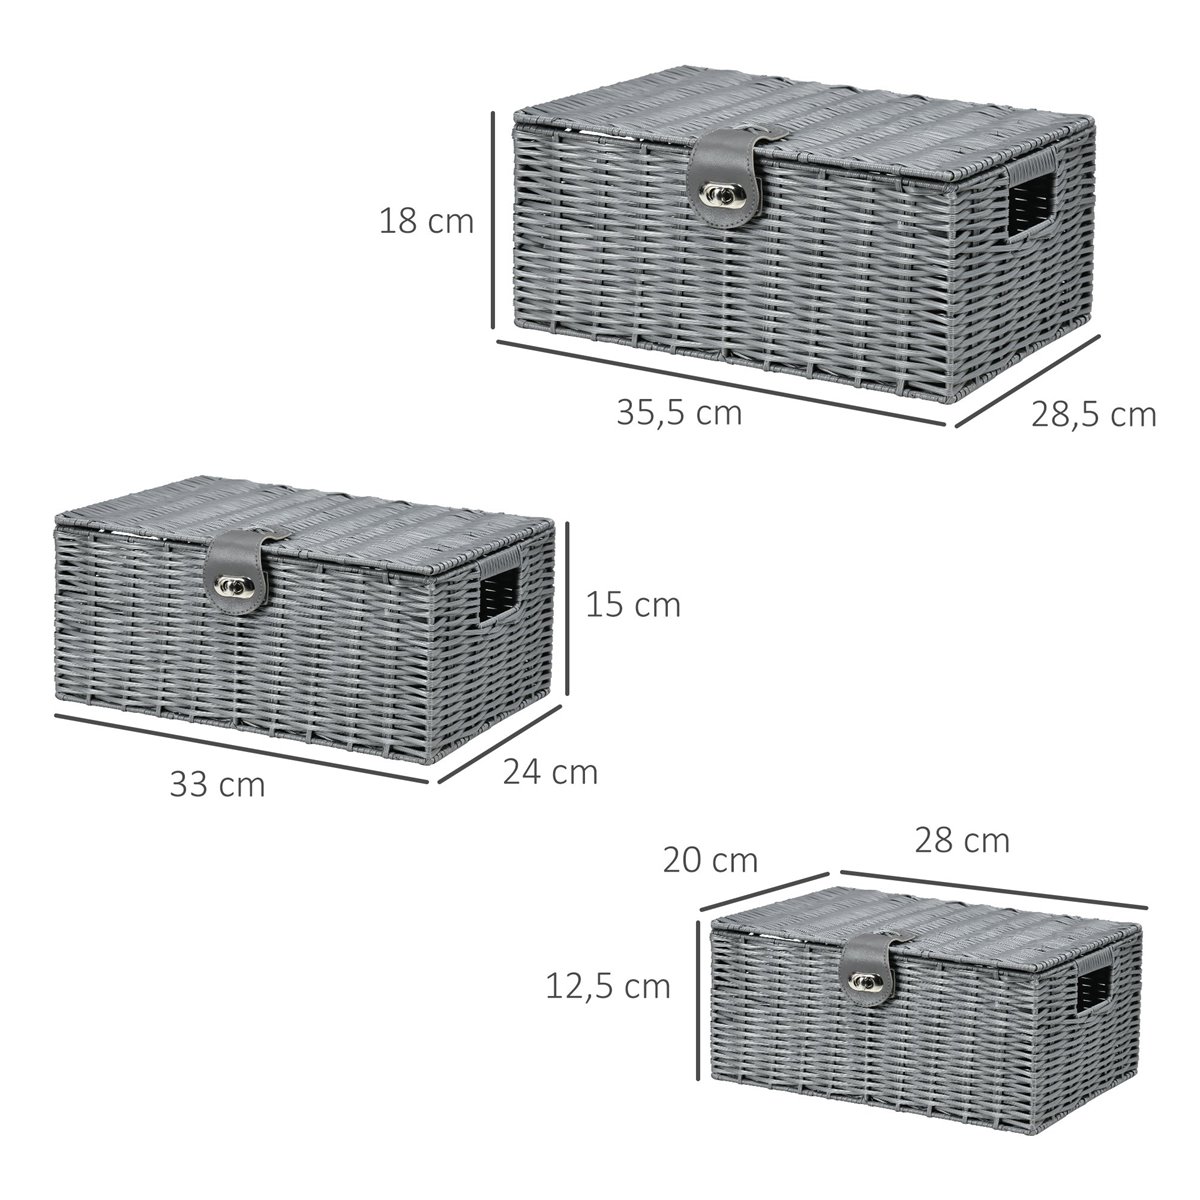 Caja de almacenaje de tela no tejida 28 x 28 cm - Pack de 2 - Conforama